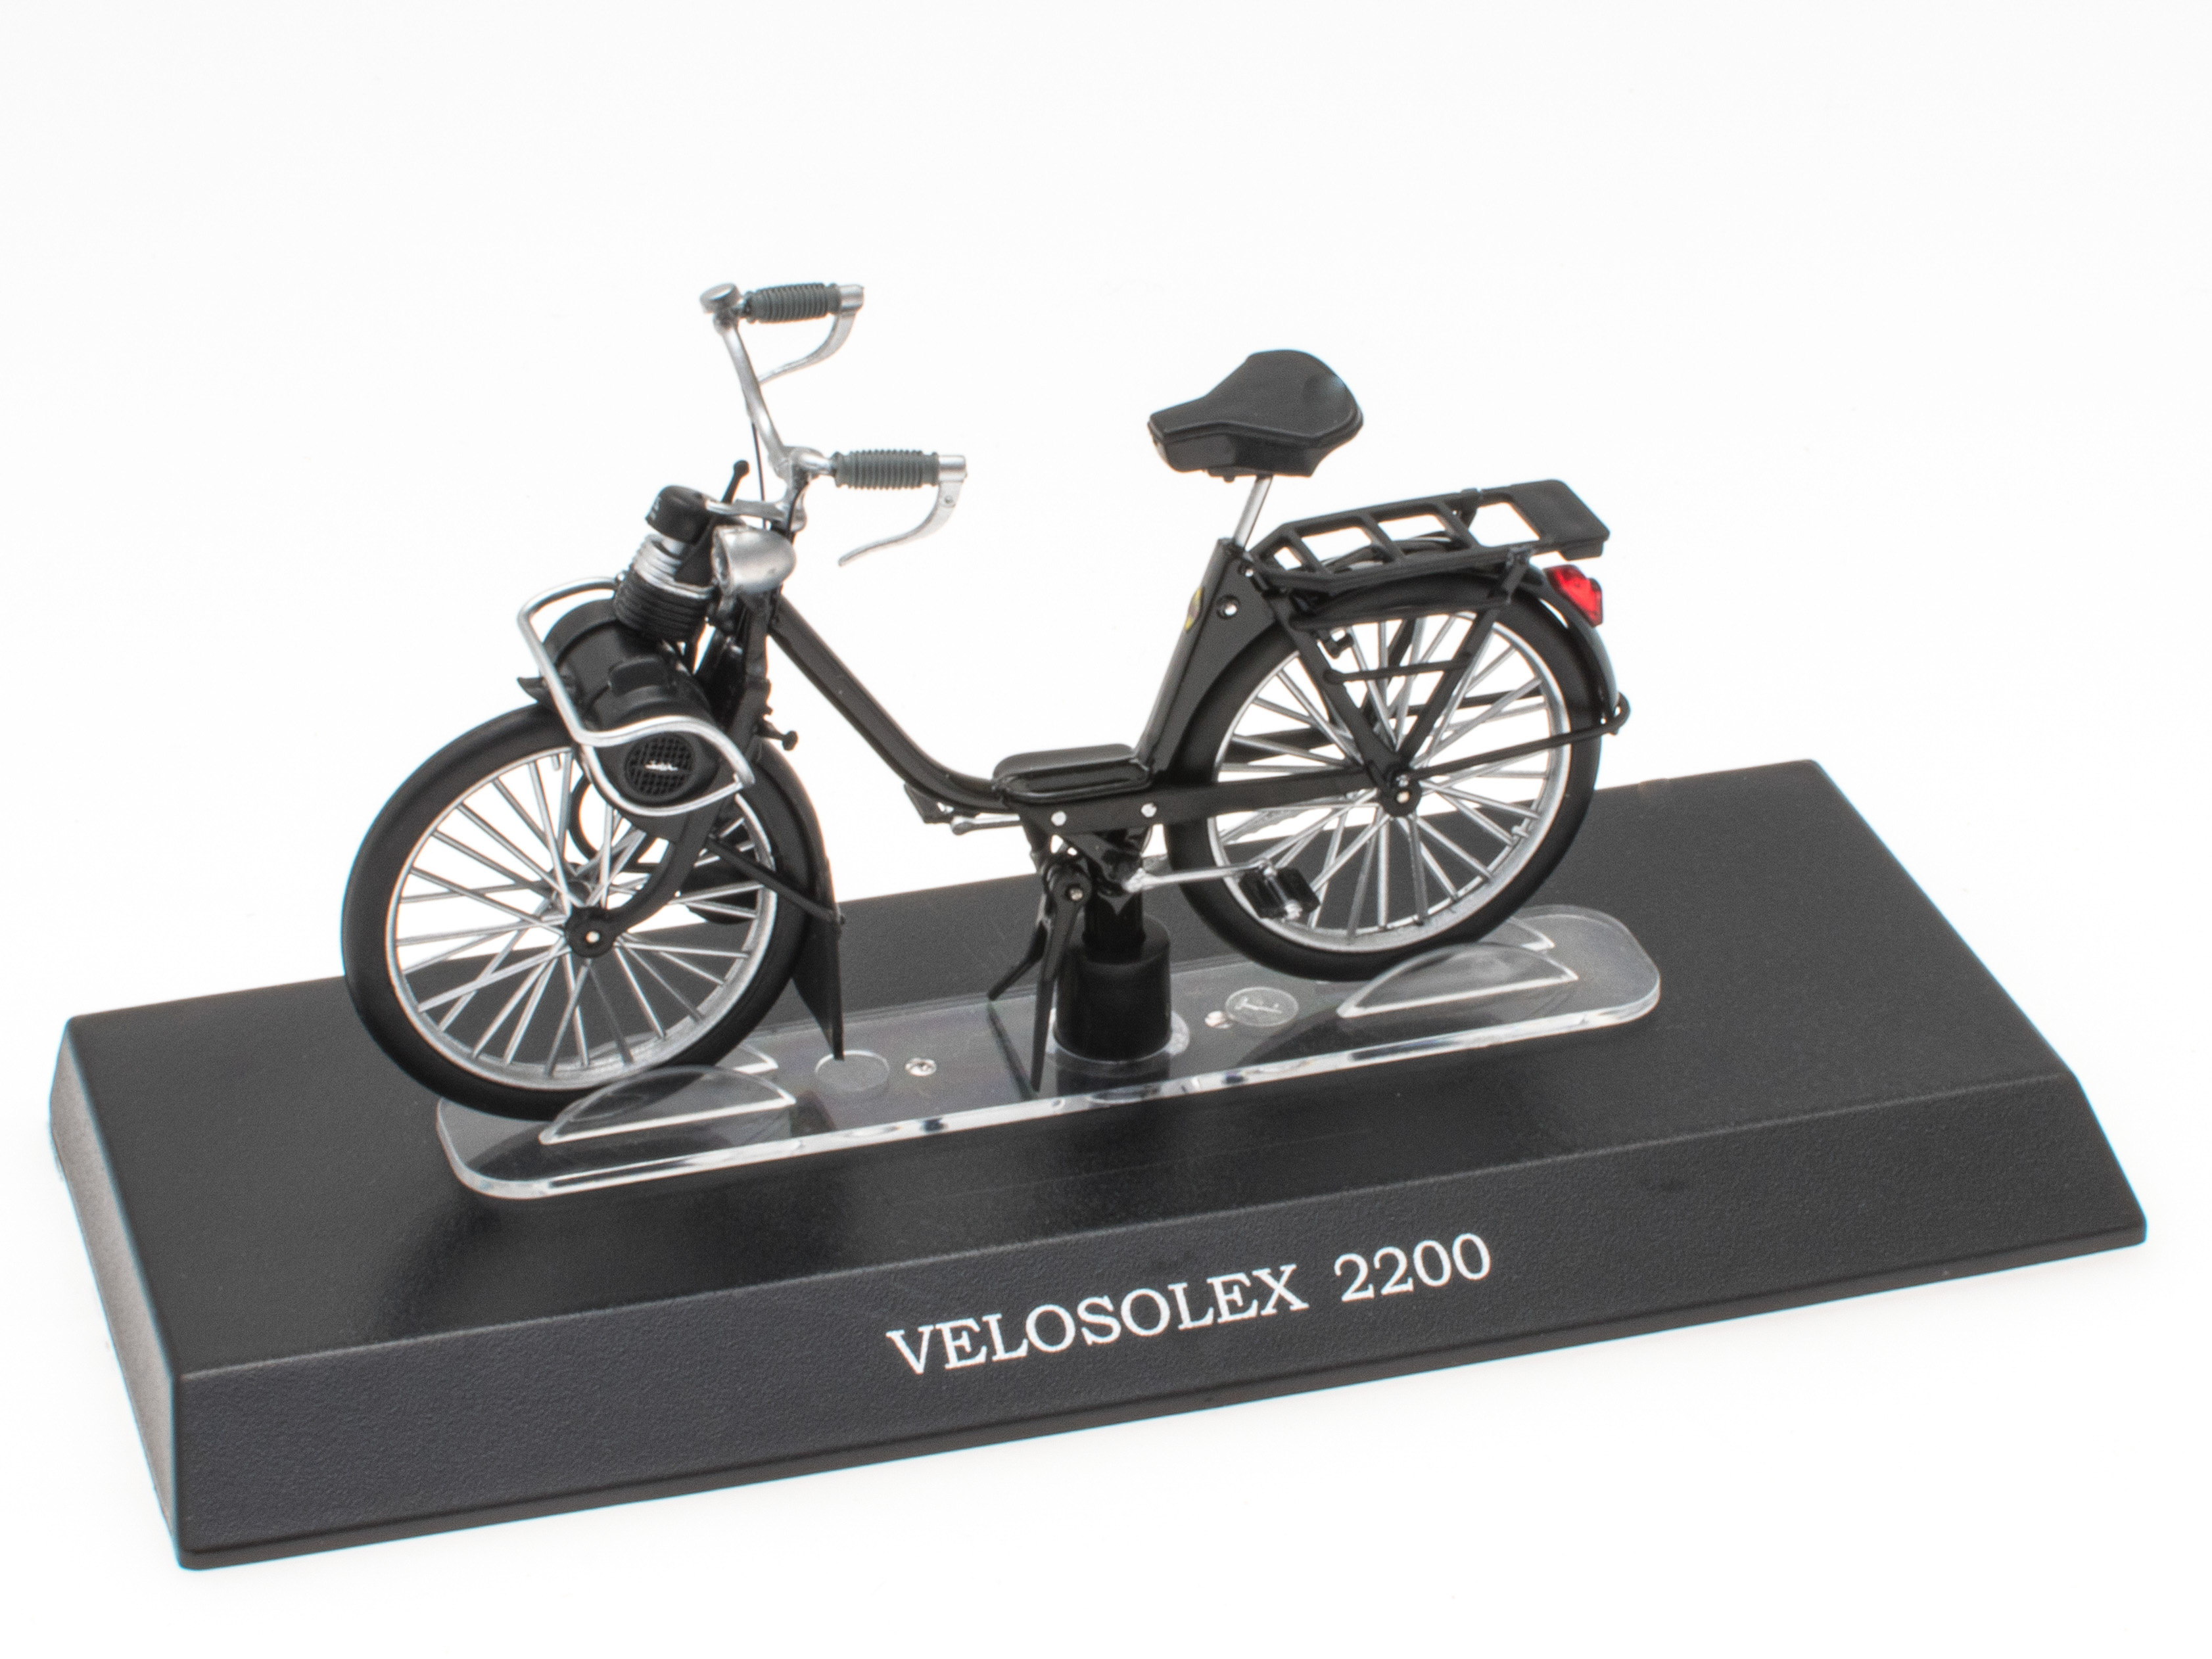 VELOSOLEX 2200